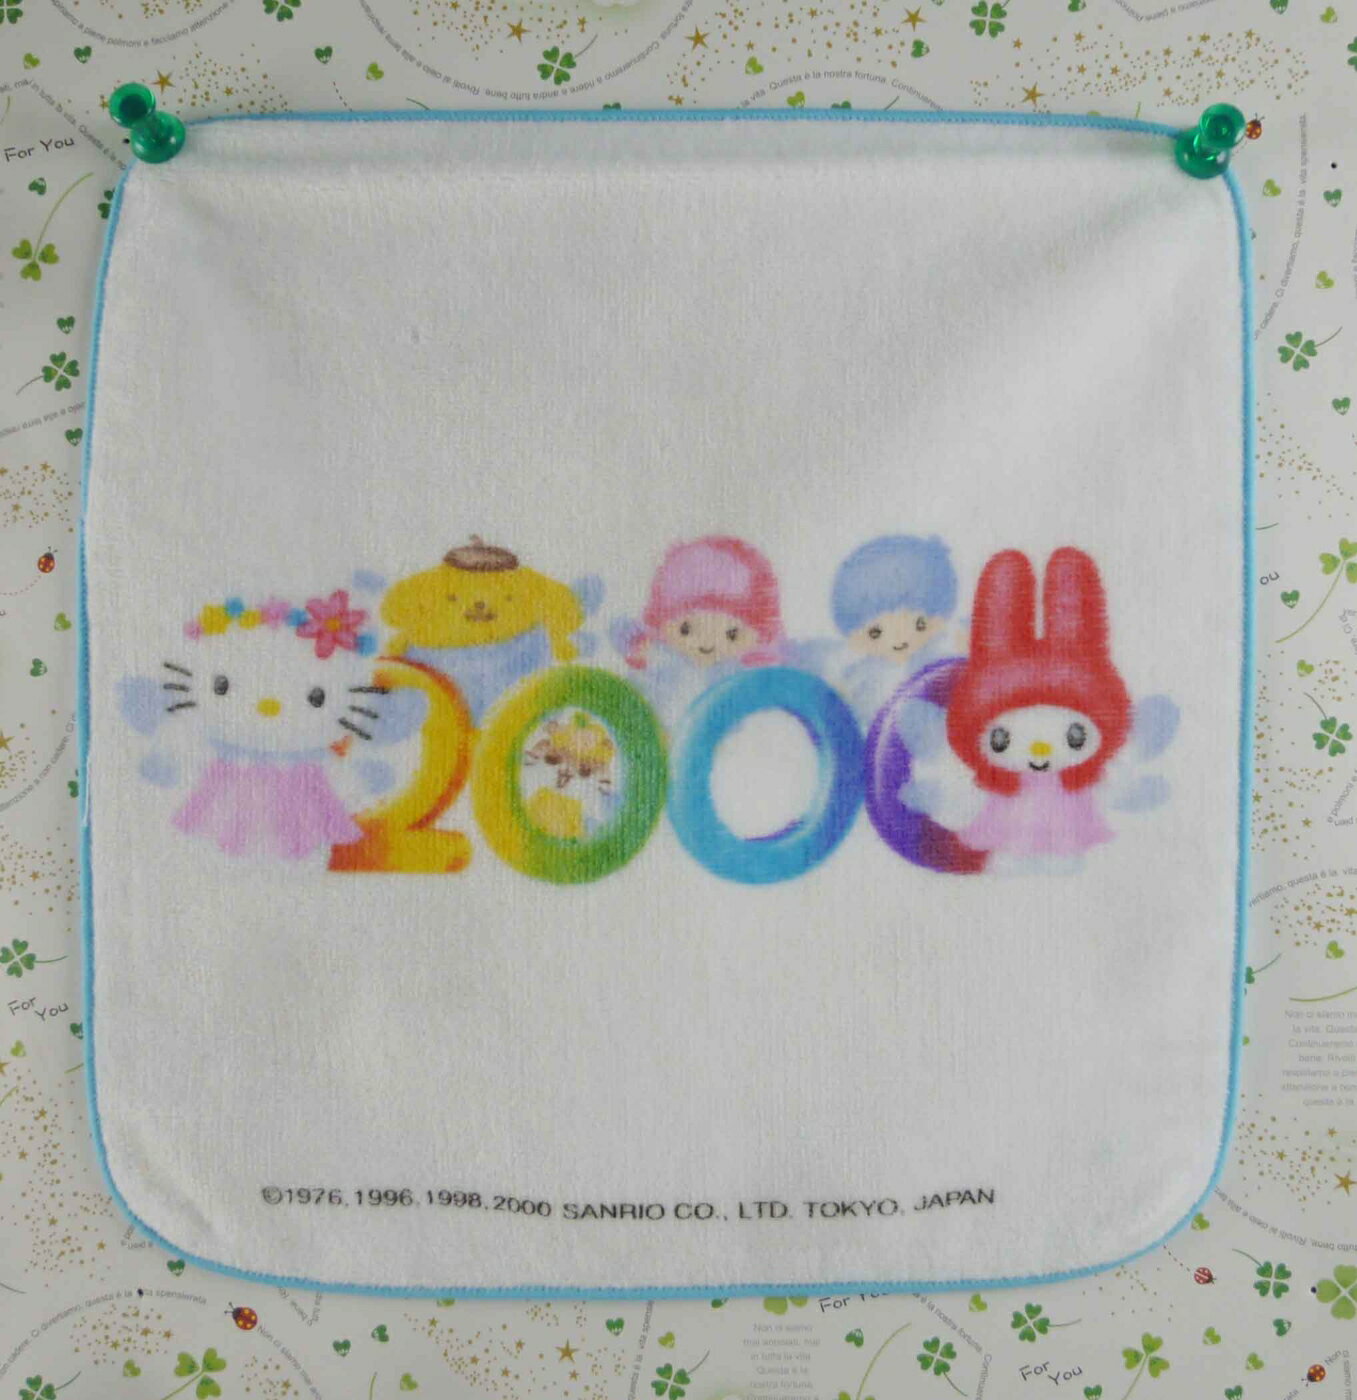 【震撼精品百貨】Hello Kitty 凱蒂貓 方巾-限量款-西元2000年 震撼日式精品百貨